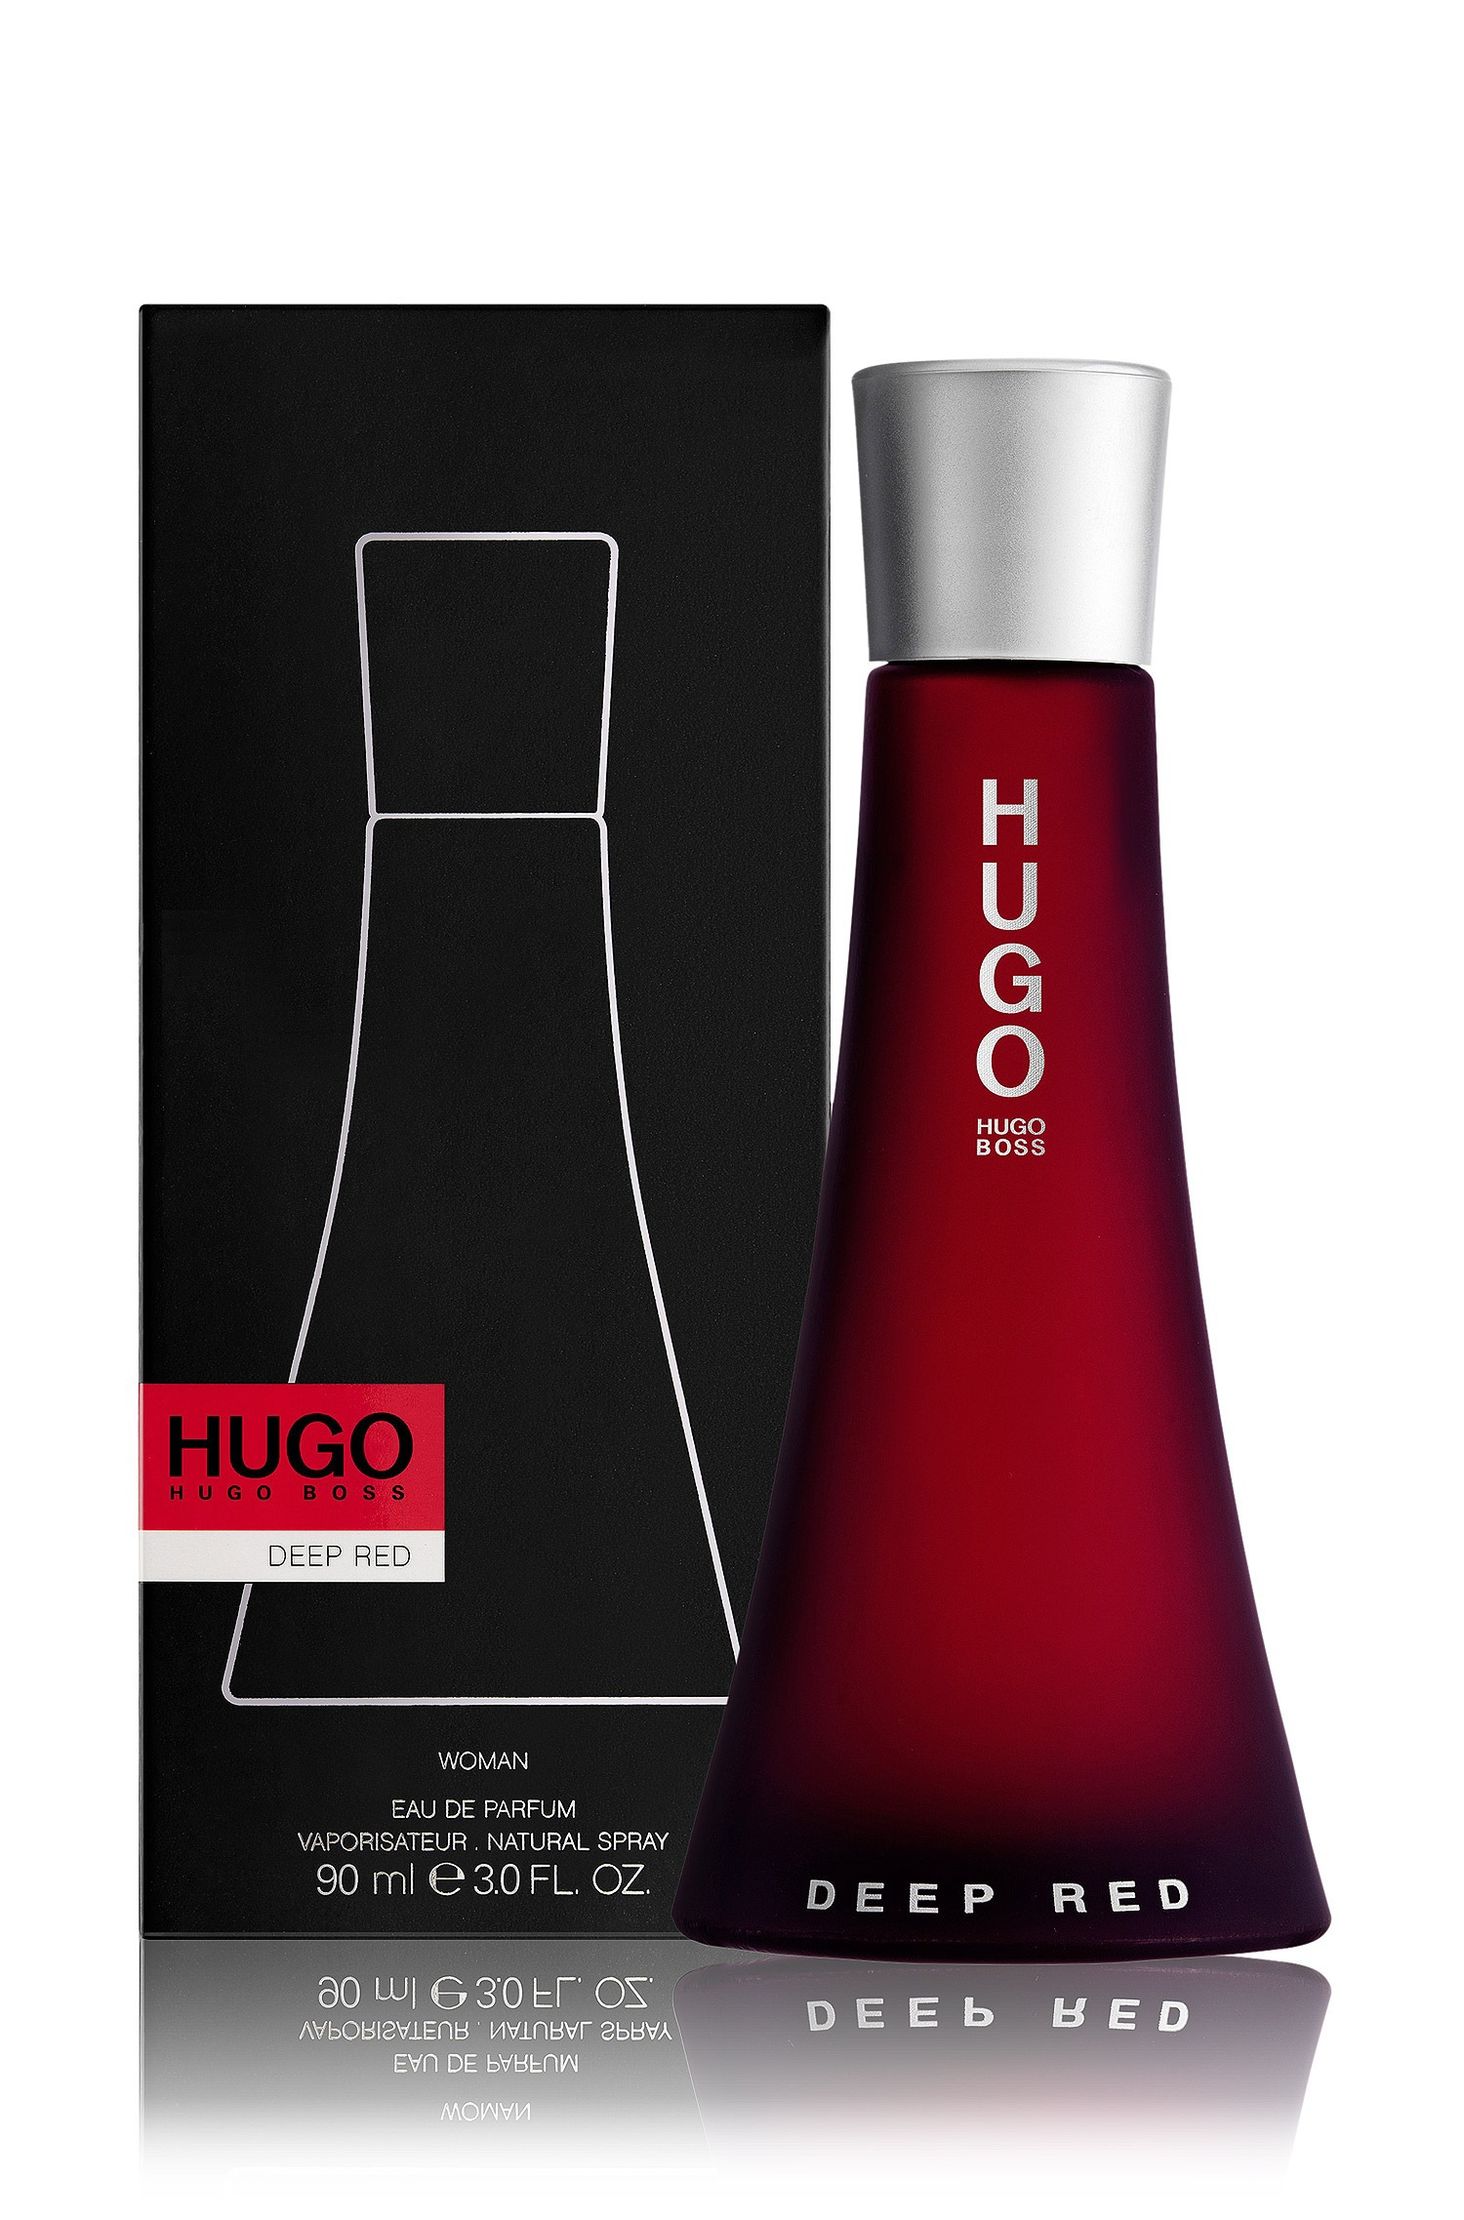 Хуго босс ред. Хьюго босс дип ред. Hugo Deep Red w EDP 90 ml. Hugo Boss Deep Red/парфюмерная вода/90ml.. Духи Хьюго босс дип ред.